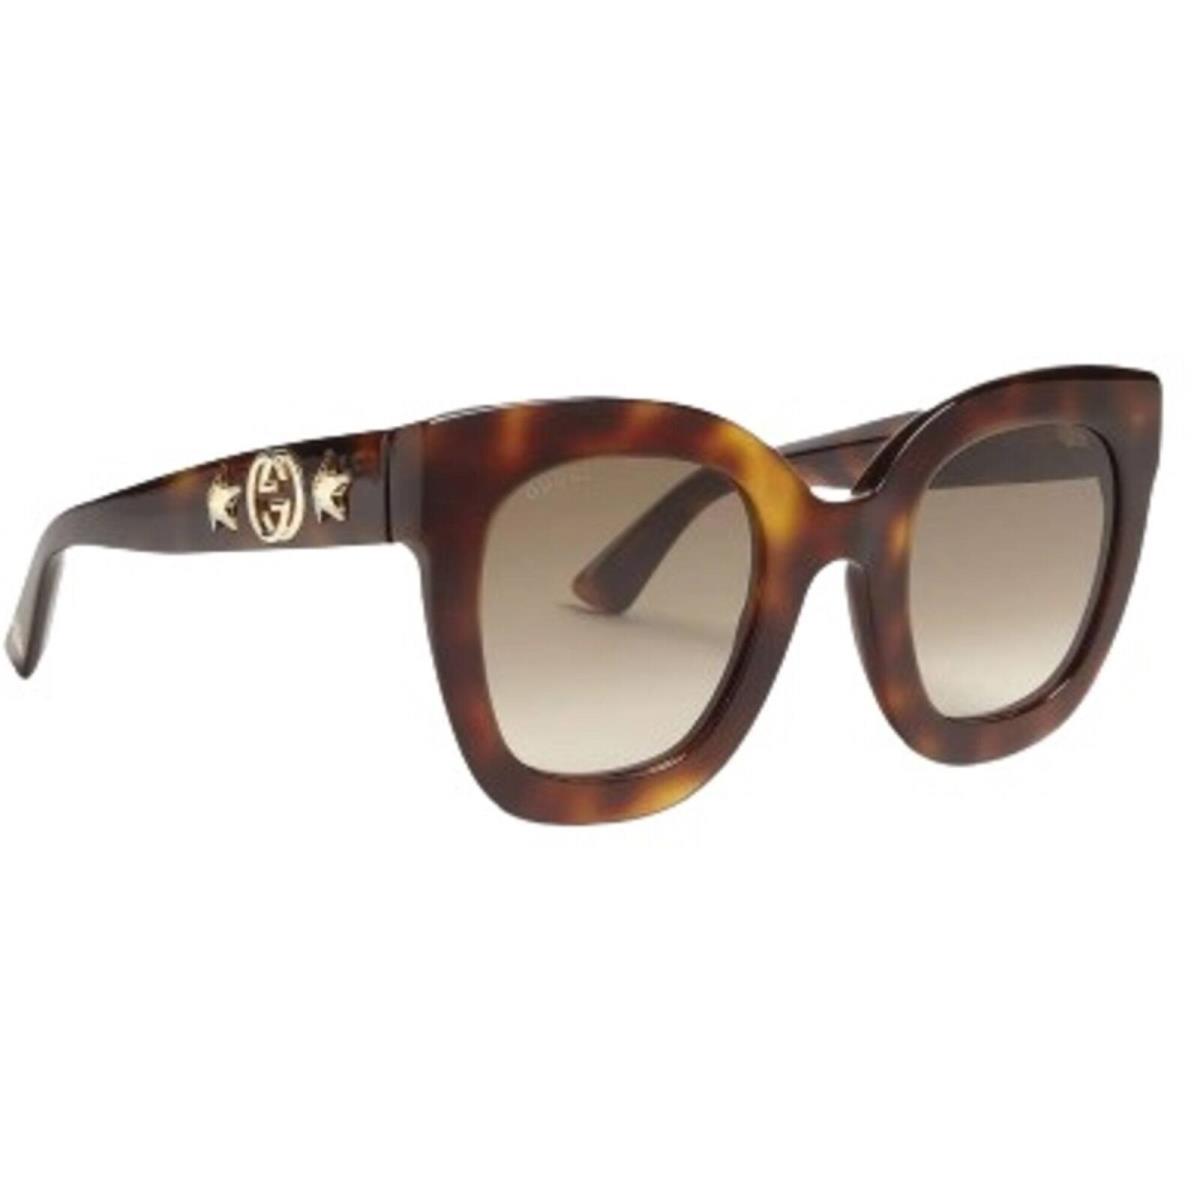 Gucci Women`s Sunglasses Havana Acetate Full Rim Butterfly Frame GG0208S 003